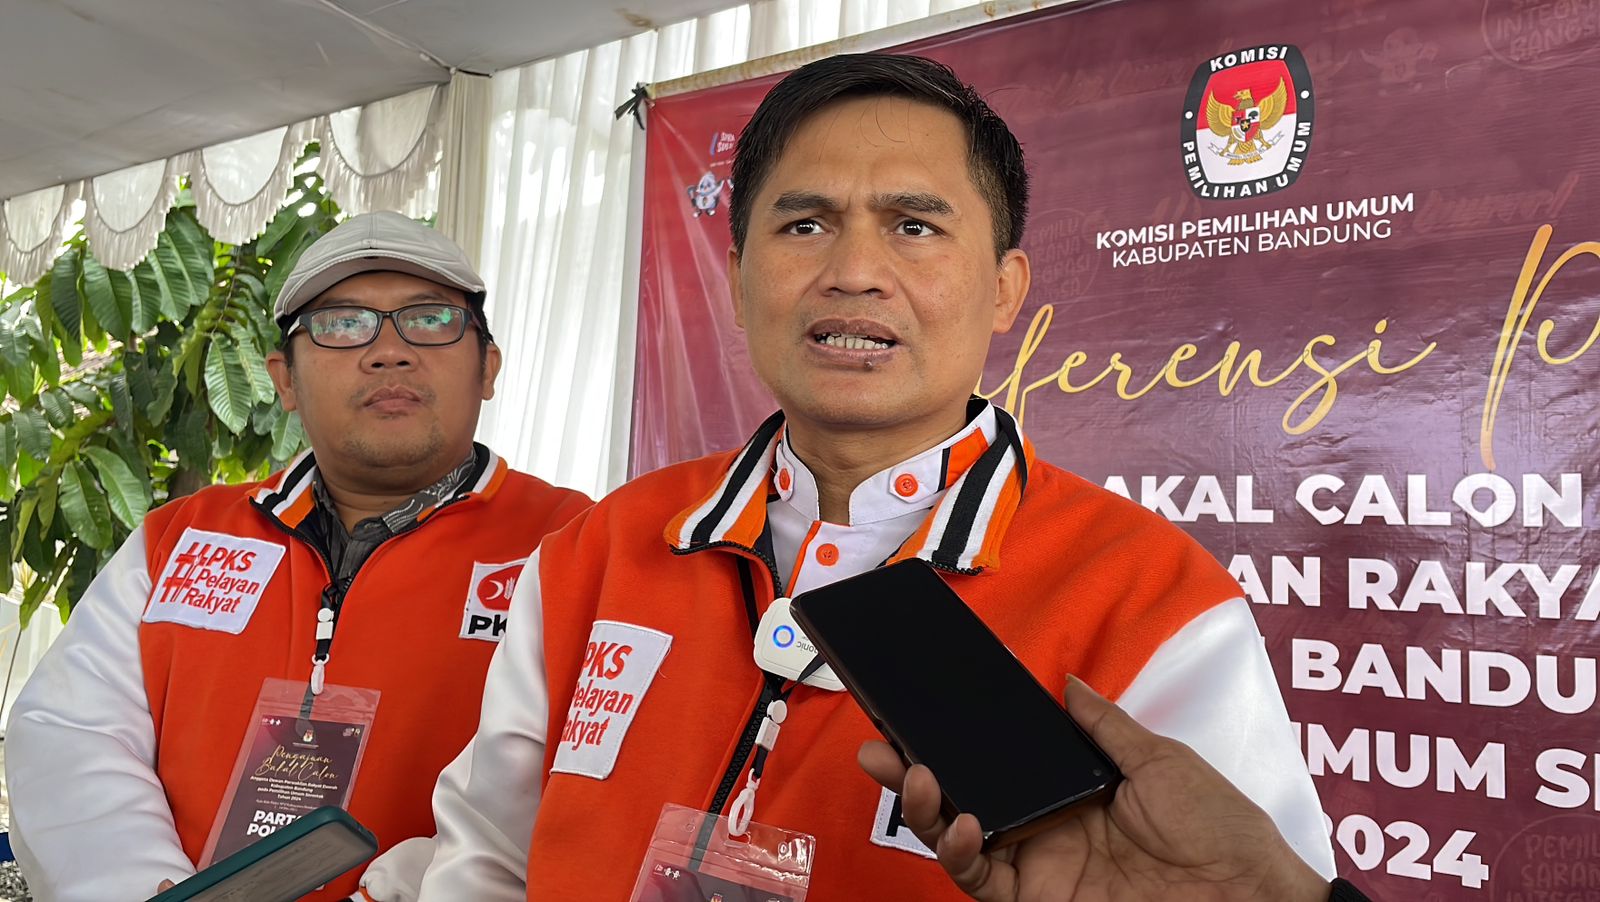 Partai Keadilan Sejahtera (PKS) Menjadi Pendaftar Pertama Bacaleg DPRD di Kabupaten Bandung dalam Pemilu 2024. Foto Agi Jabarekspres